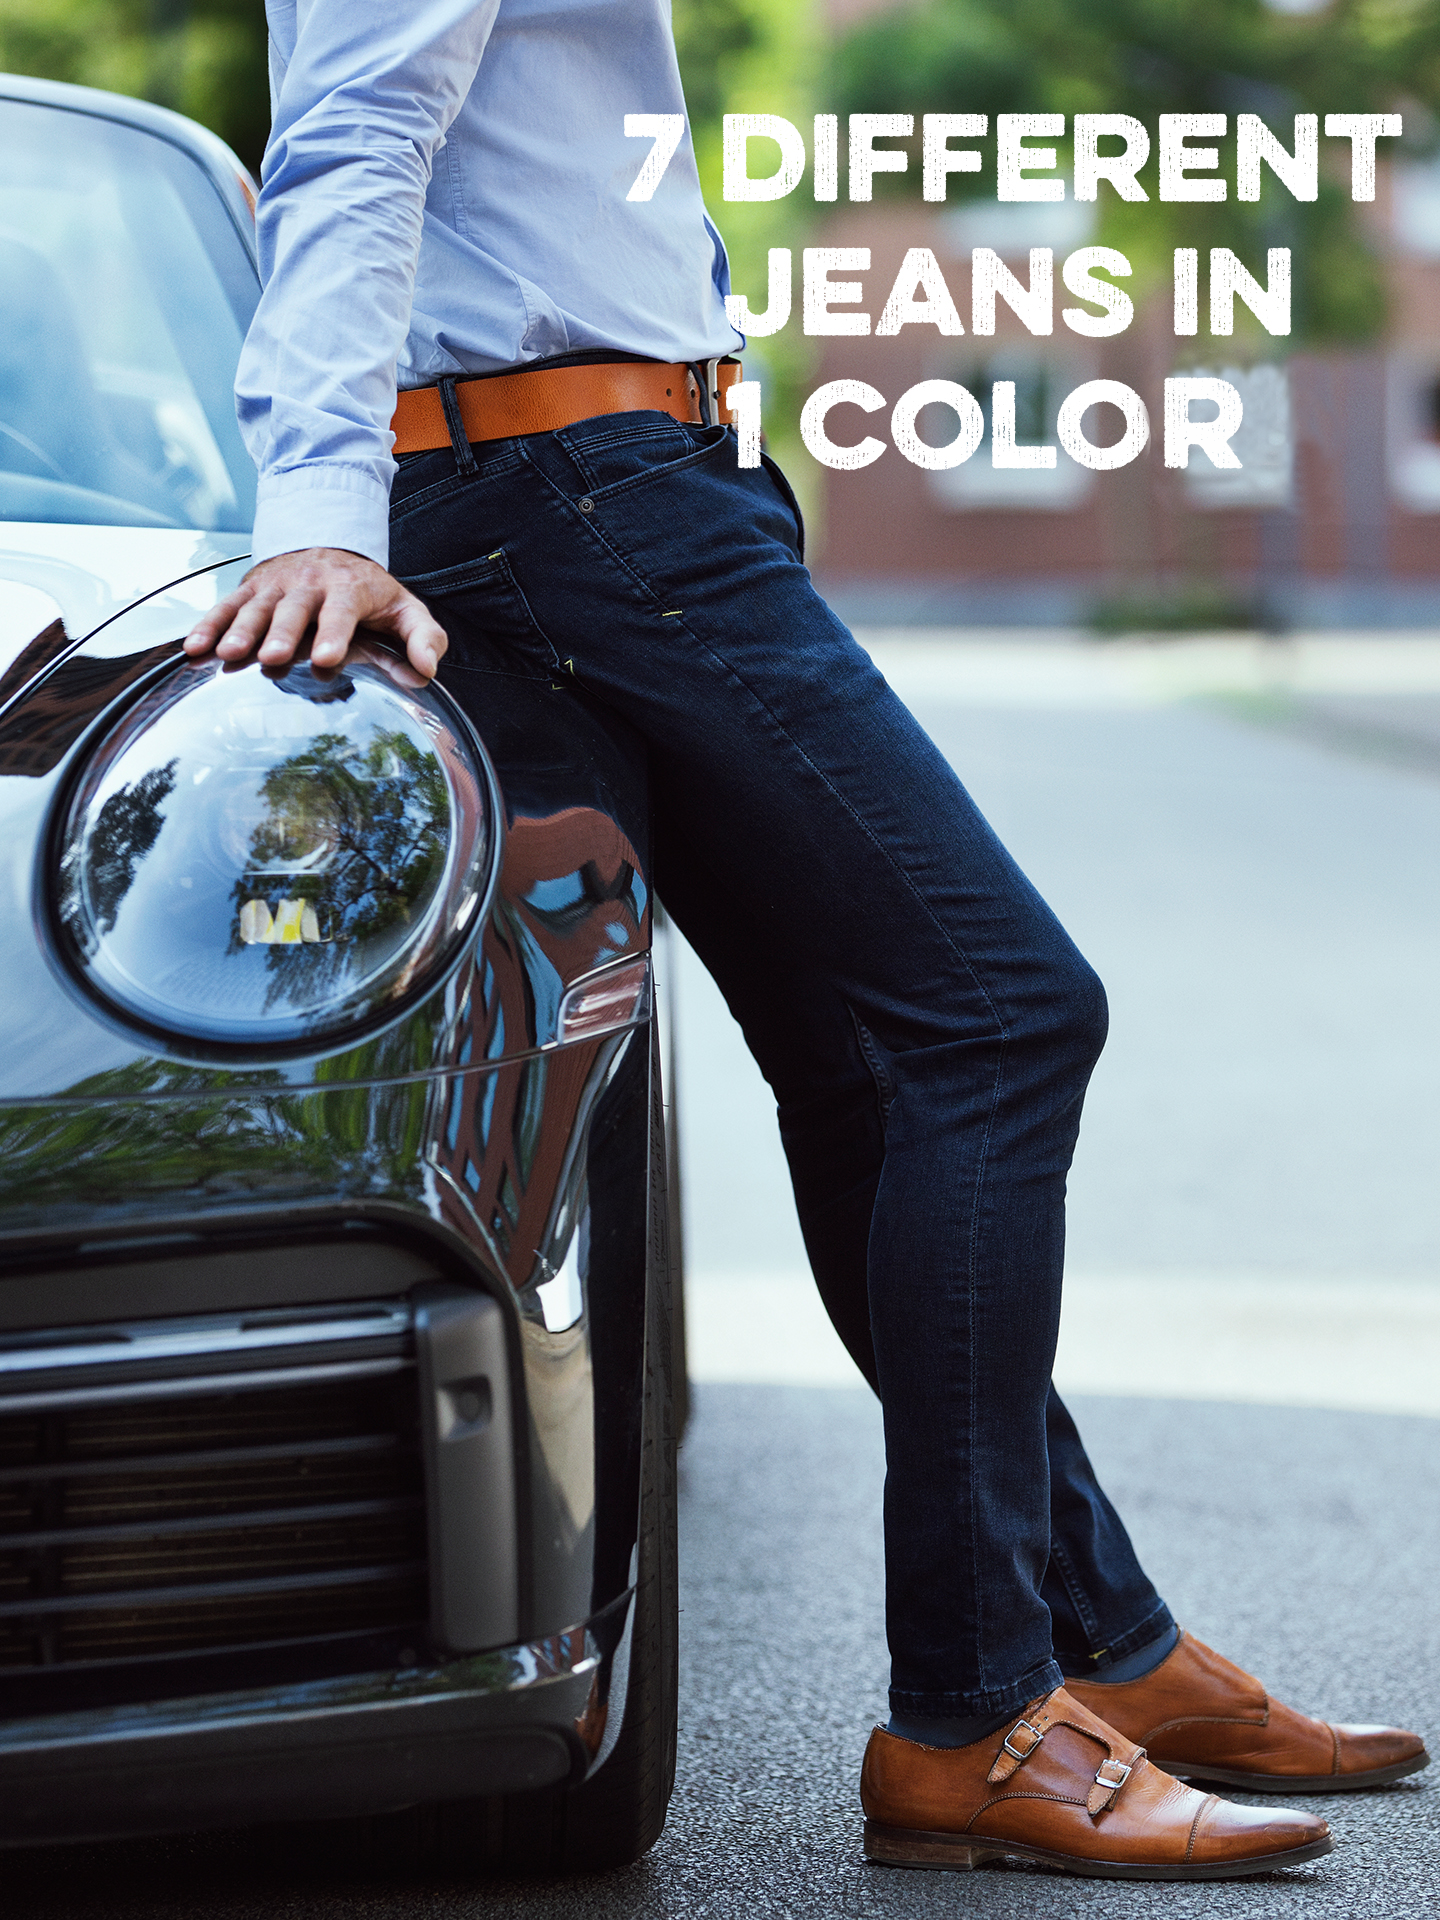 7 differtent jeans 1 color - Blue Black